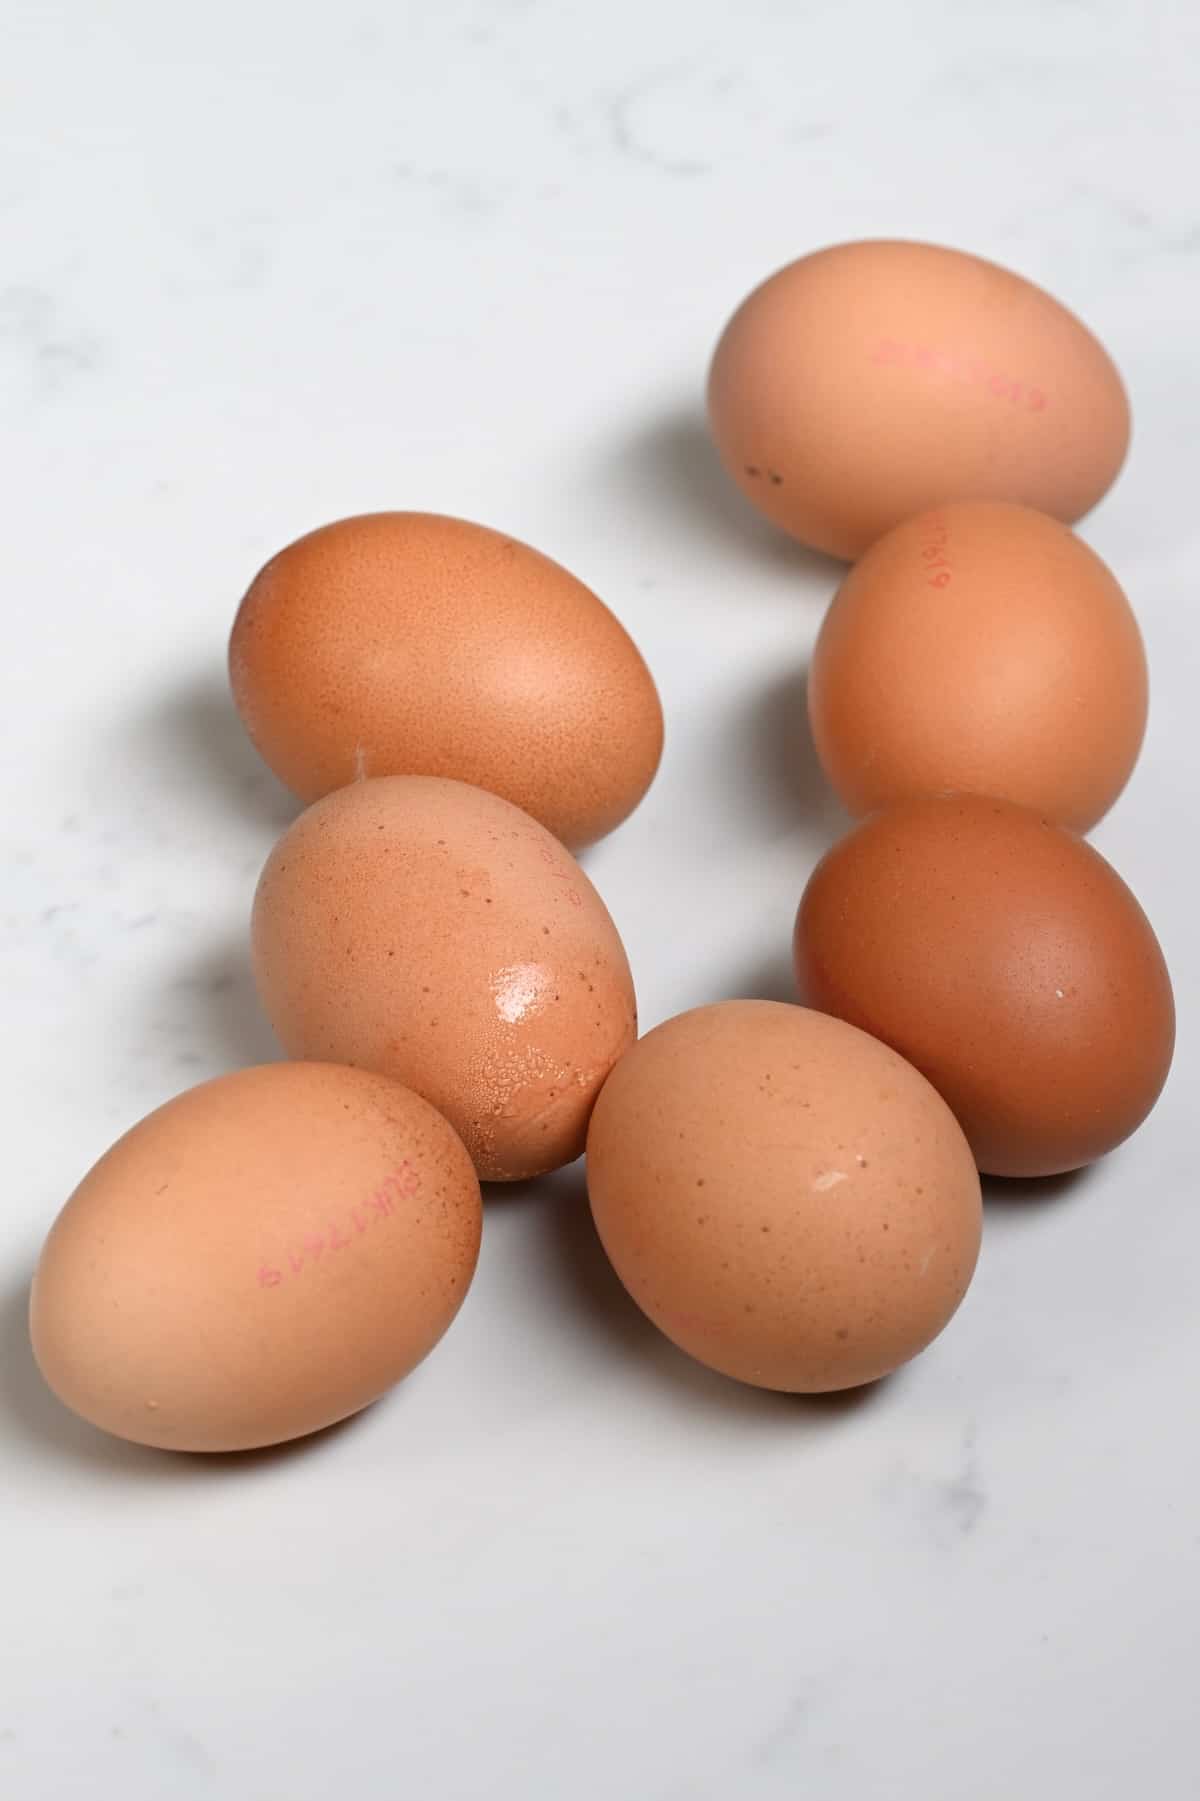 Seven hard-boiled eggs